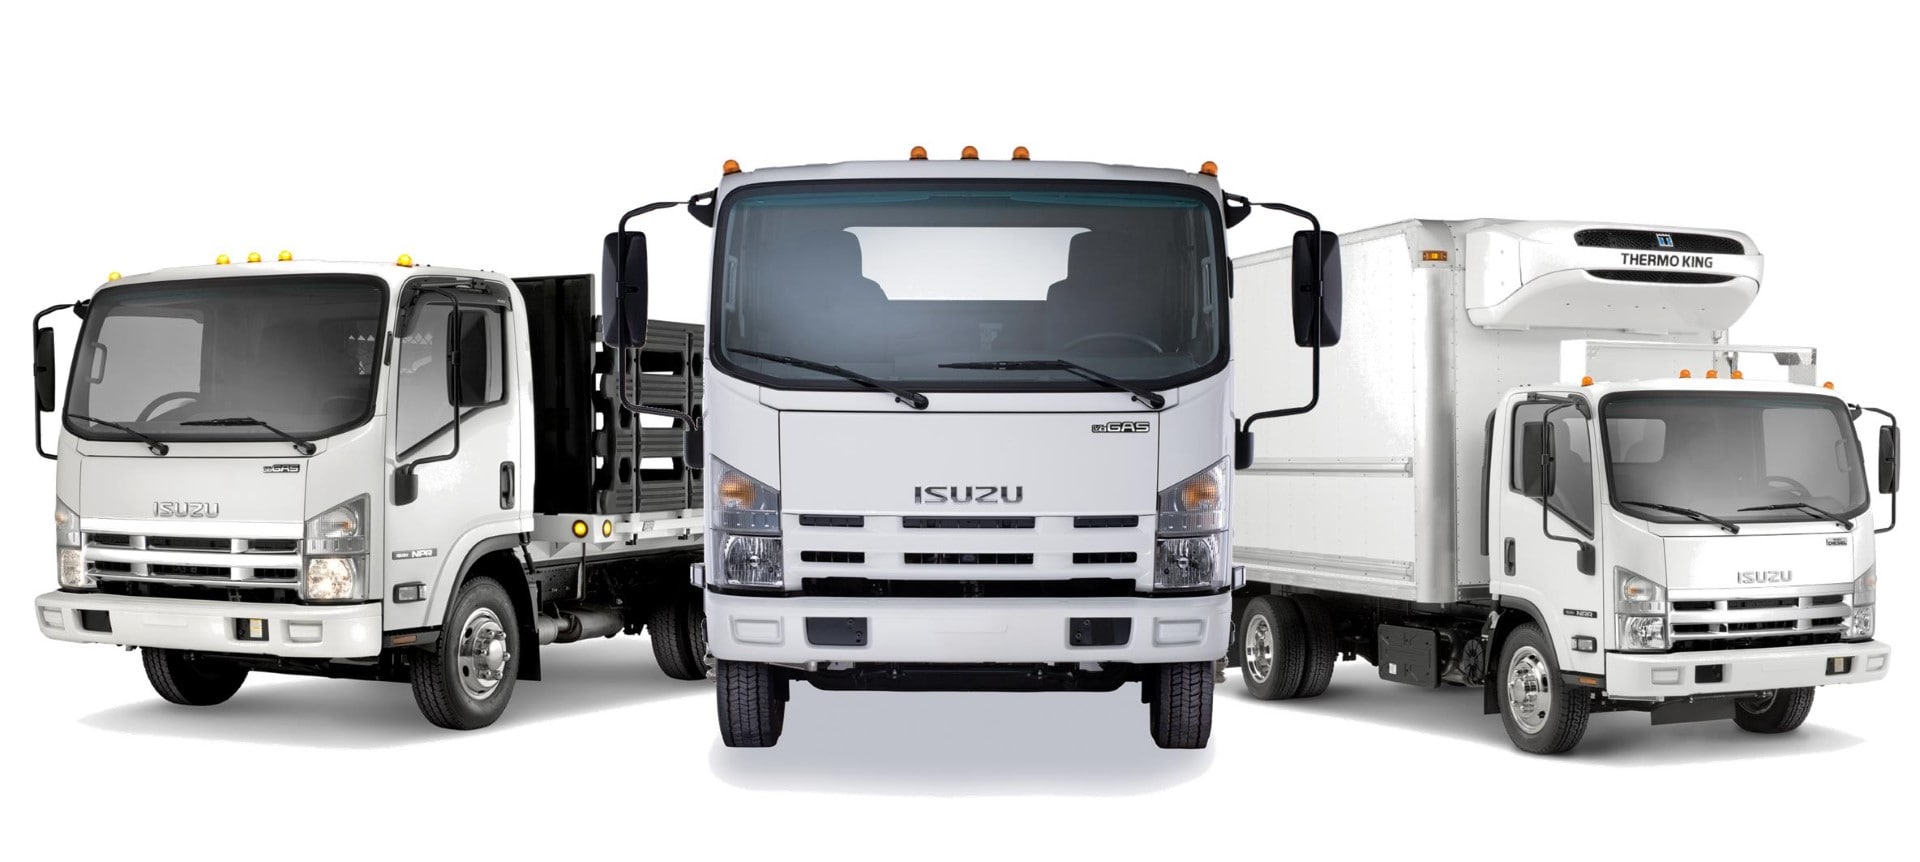 Download ISUZU TRUCK | IRL International Truck Centres Ltd.